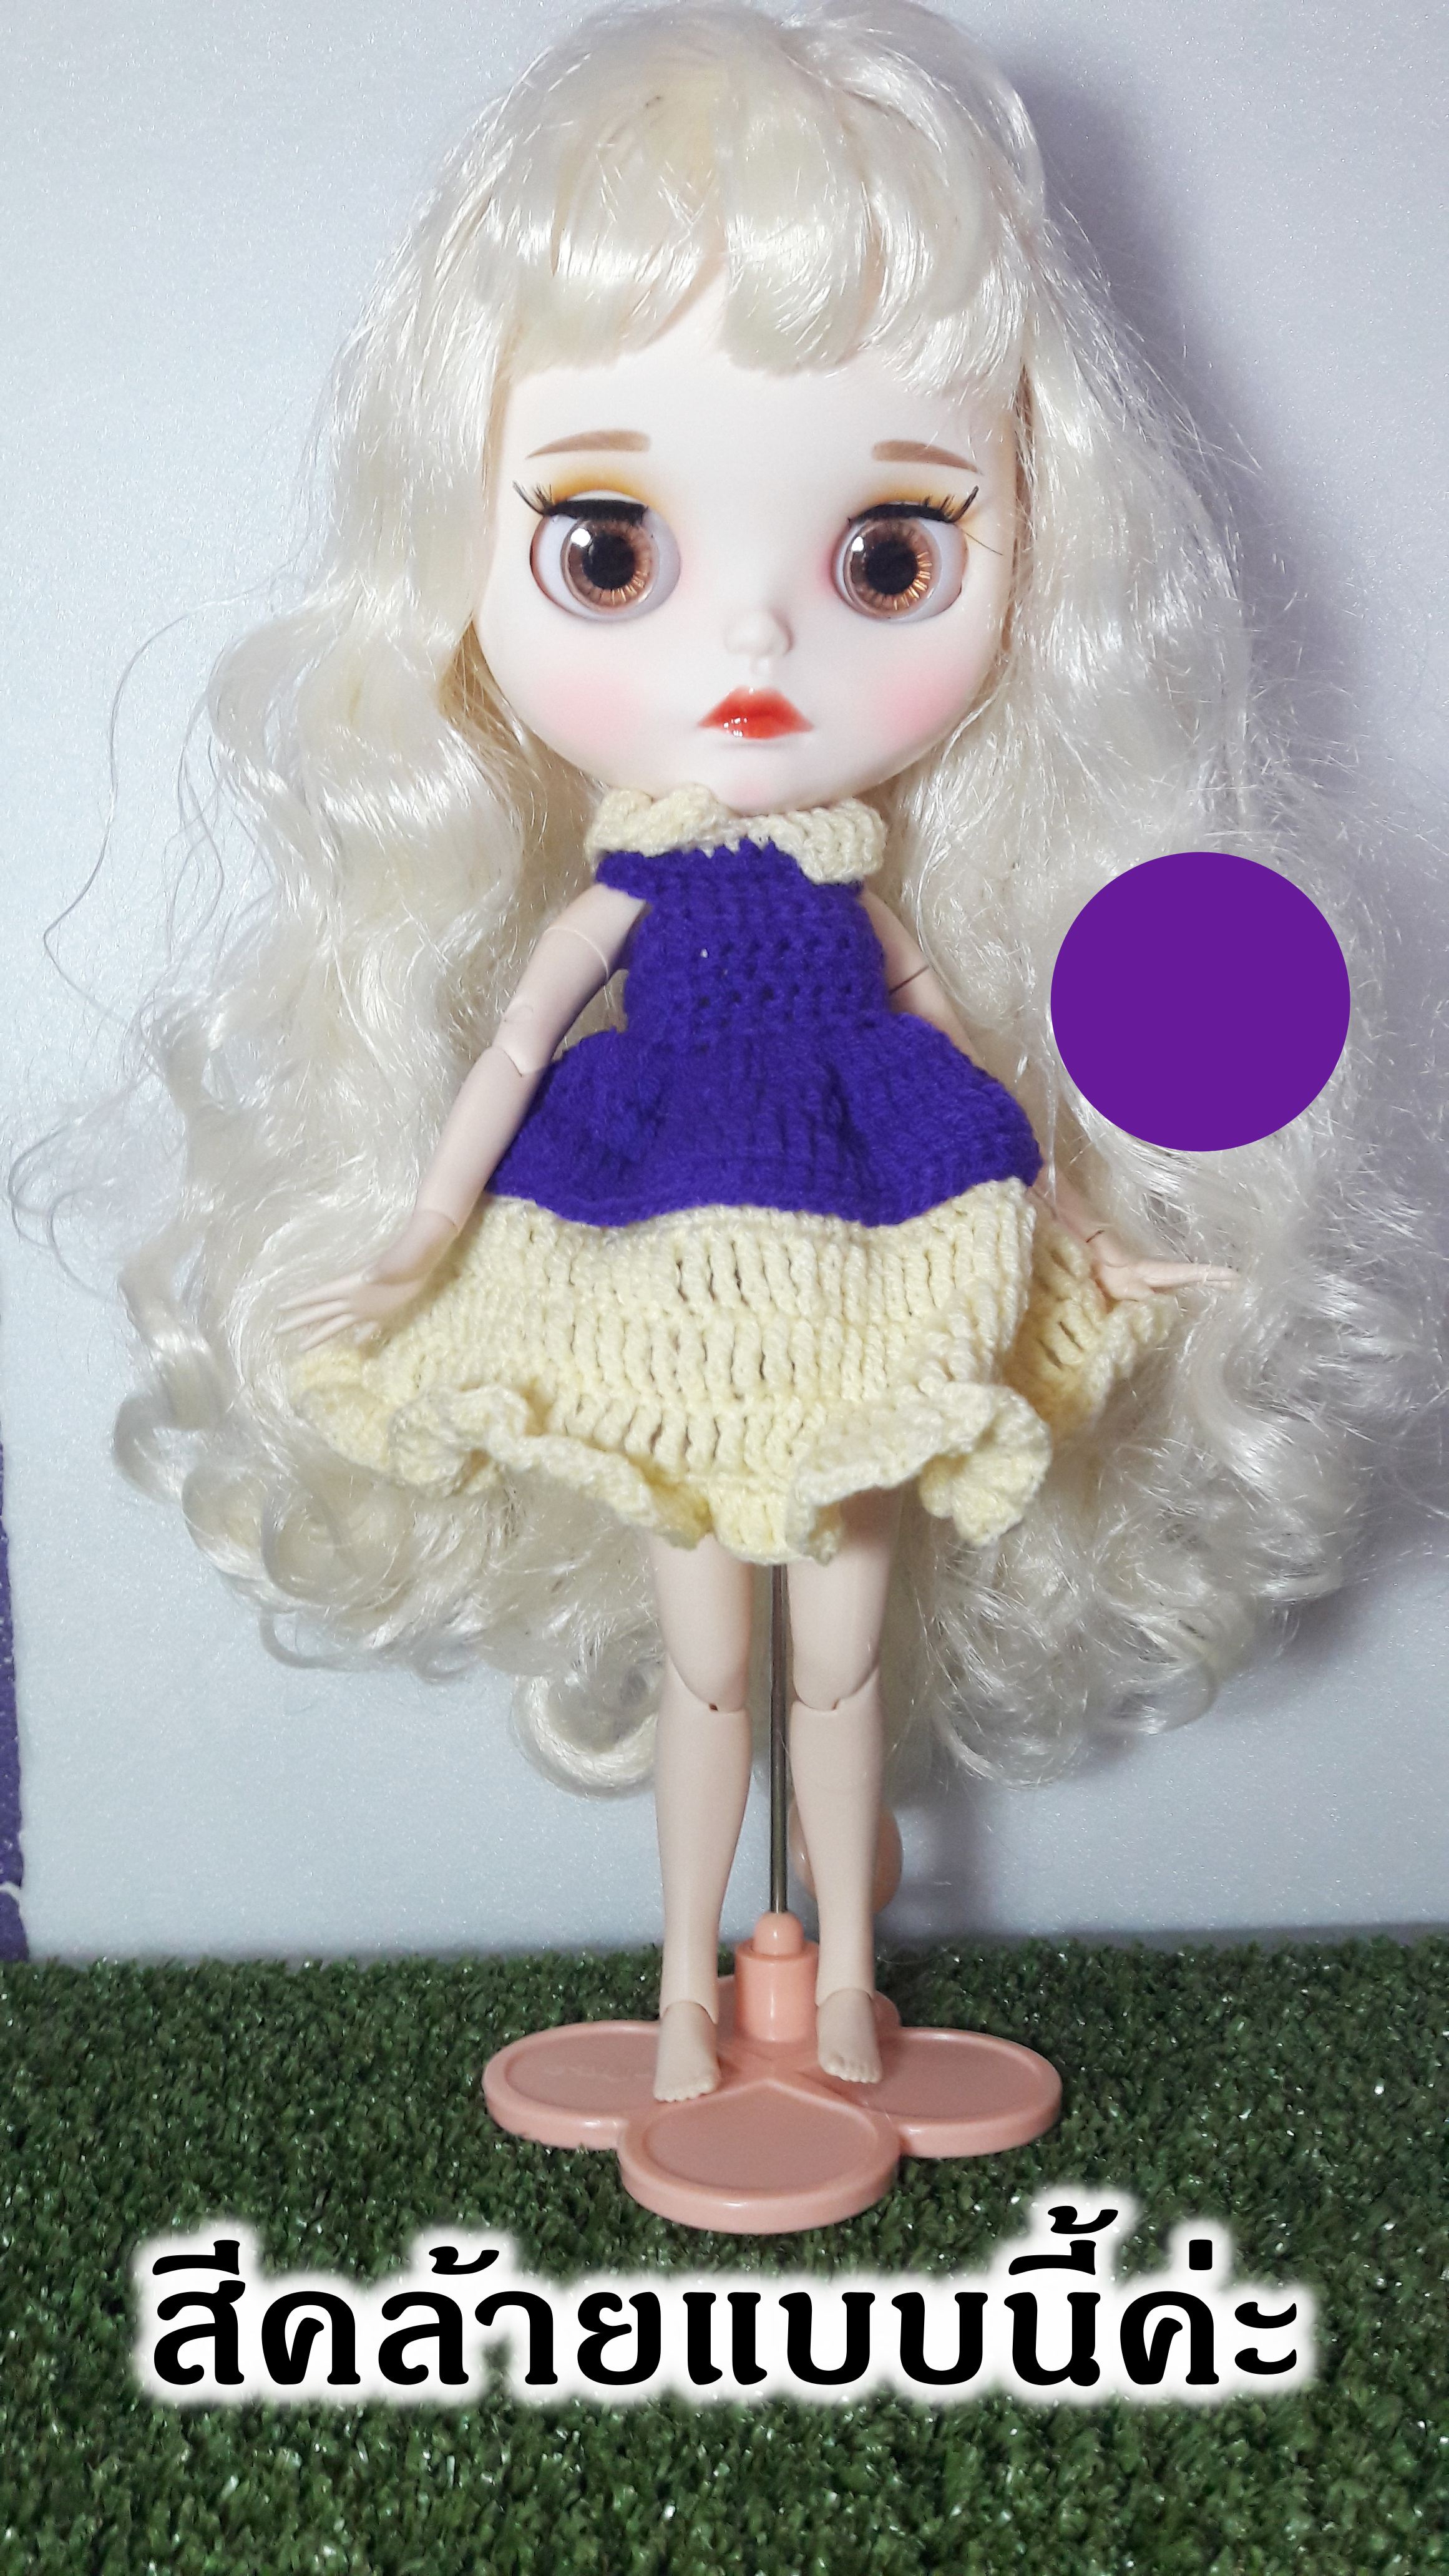 (1ชุด พร้อมส่ง เซ็ท 3/14) ชุดตุ๊กตาบลายธ์ blythe ชุดตุ๊กตา กระโปรงตุ๊กตา ชุดถักไหมพรม ชุดไหมพรม จำนวน 1 ชิ้น doll clothes ชุดบลายธ์